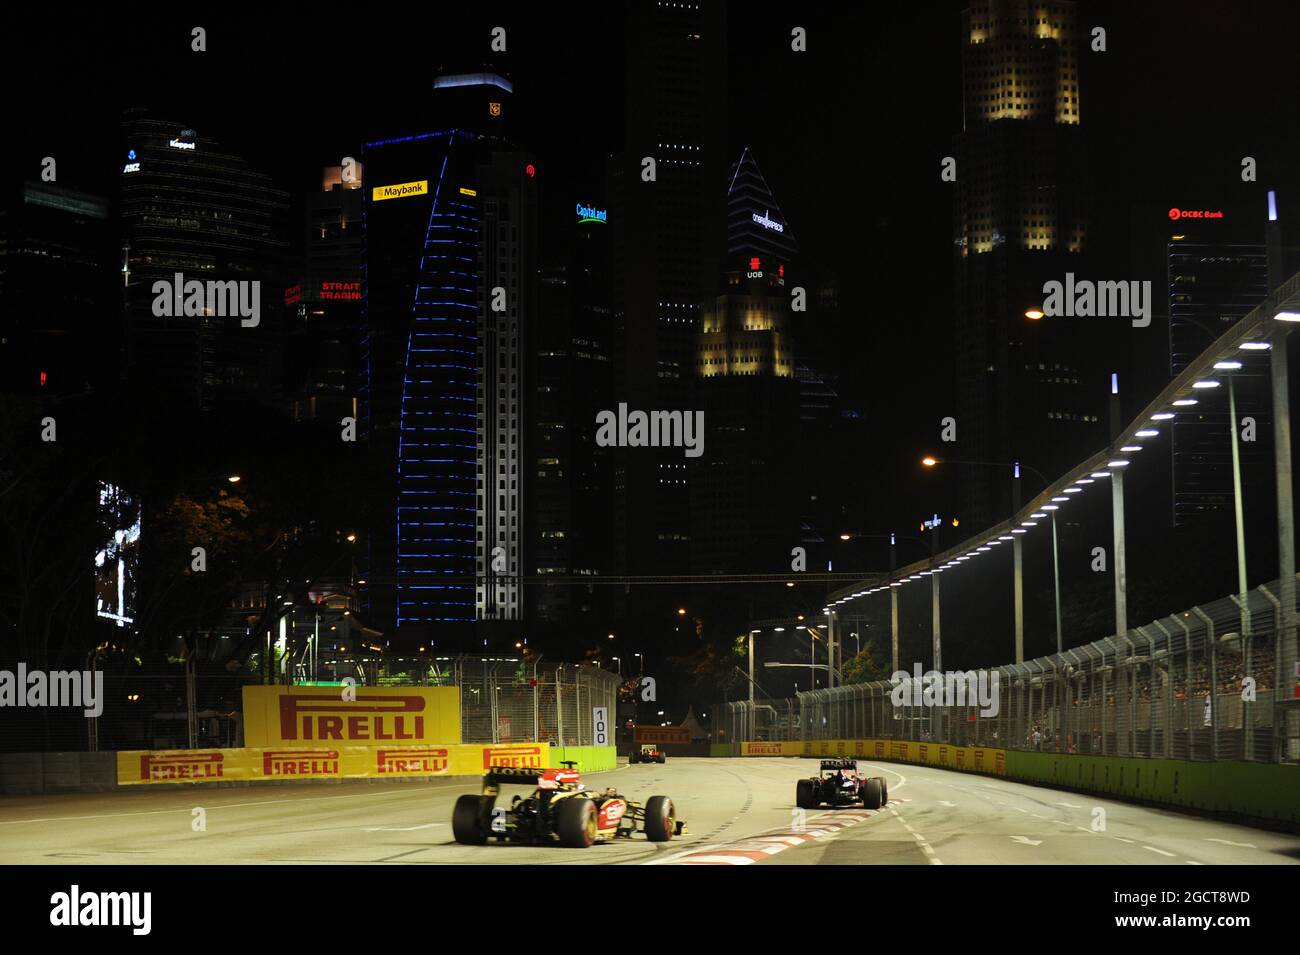 Romain Grosjean (fra) Lotus F1 E21. Gran Premio di Singapore, domenica 22 settembre 2013. Circuito Marina Bay Street, Singapore. Foto Stock